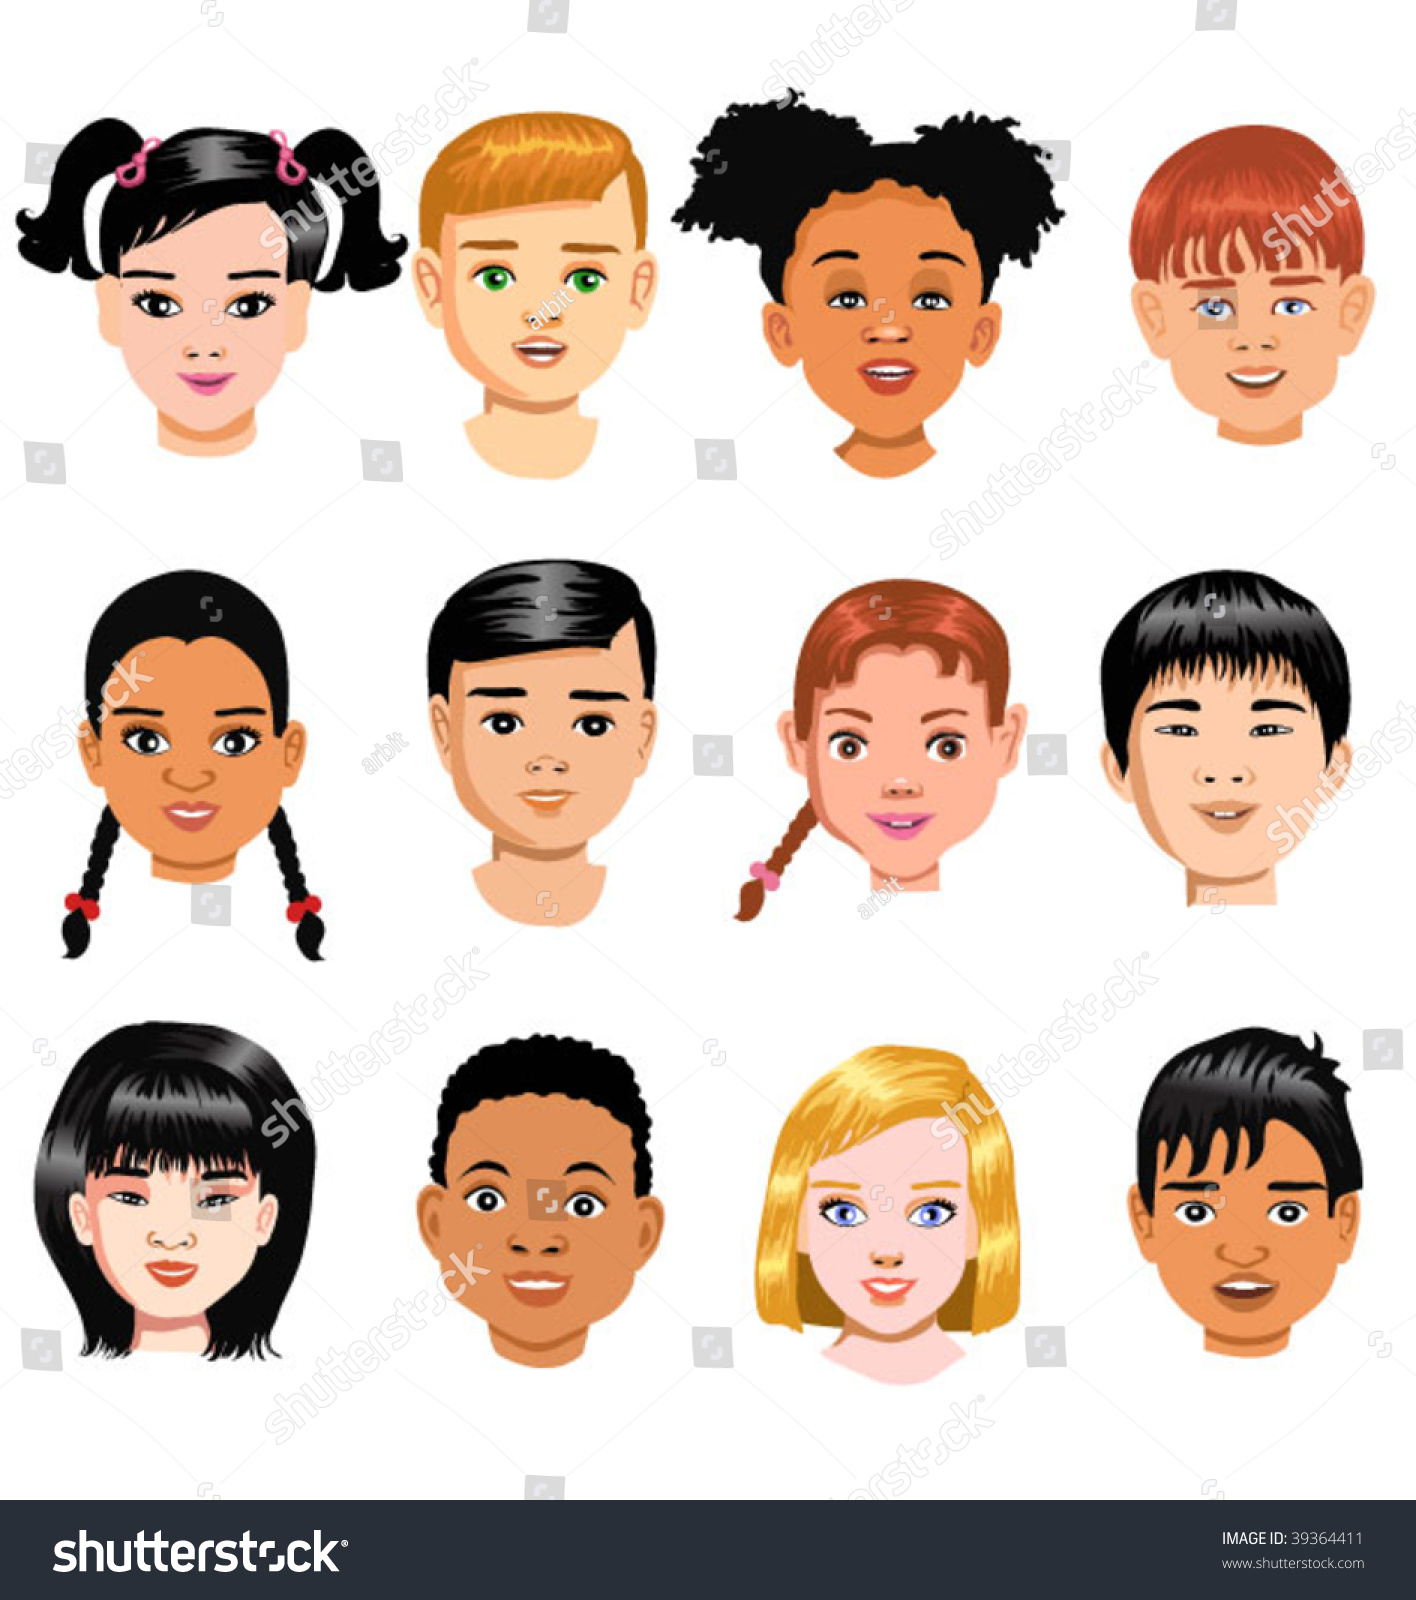 Children Of Different Races Stock Vector 39364411 : Shutterstock